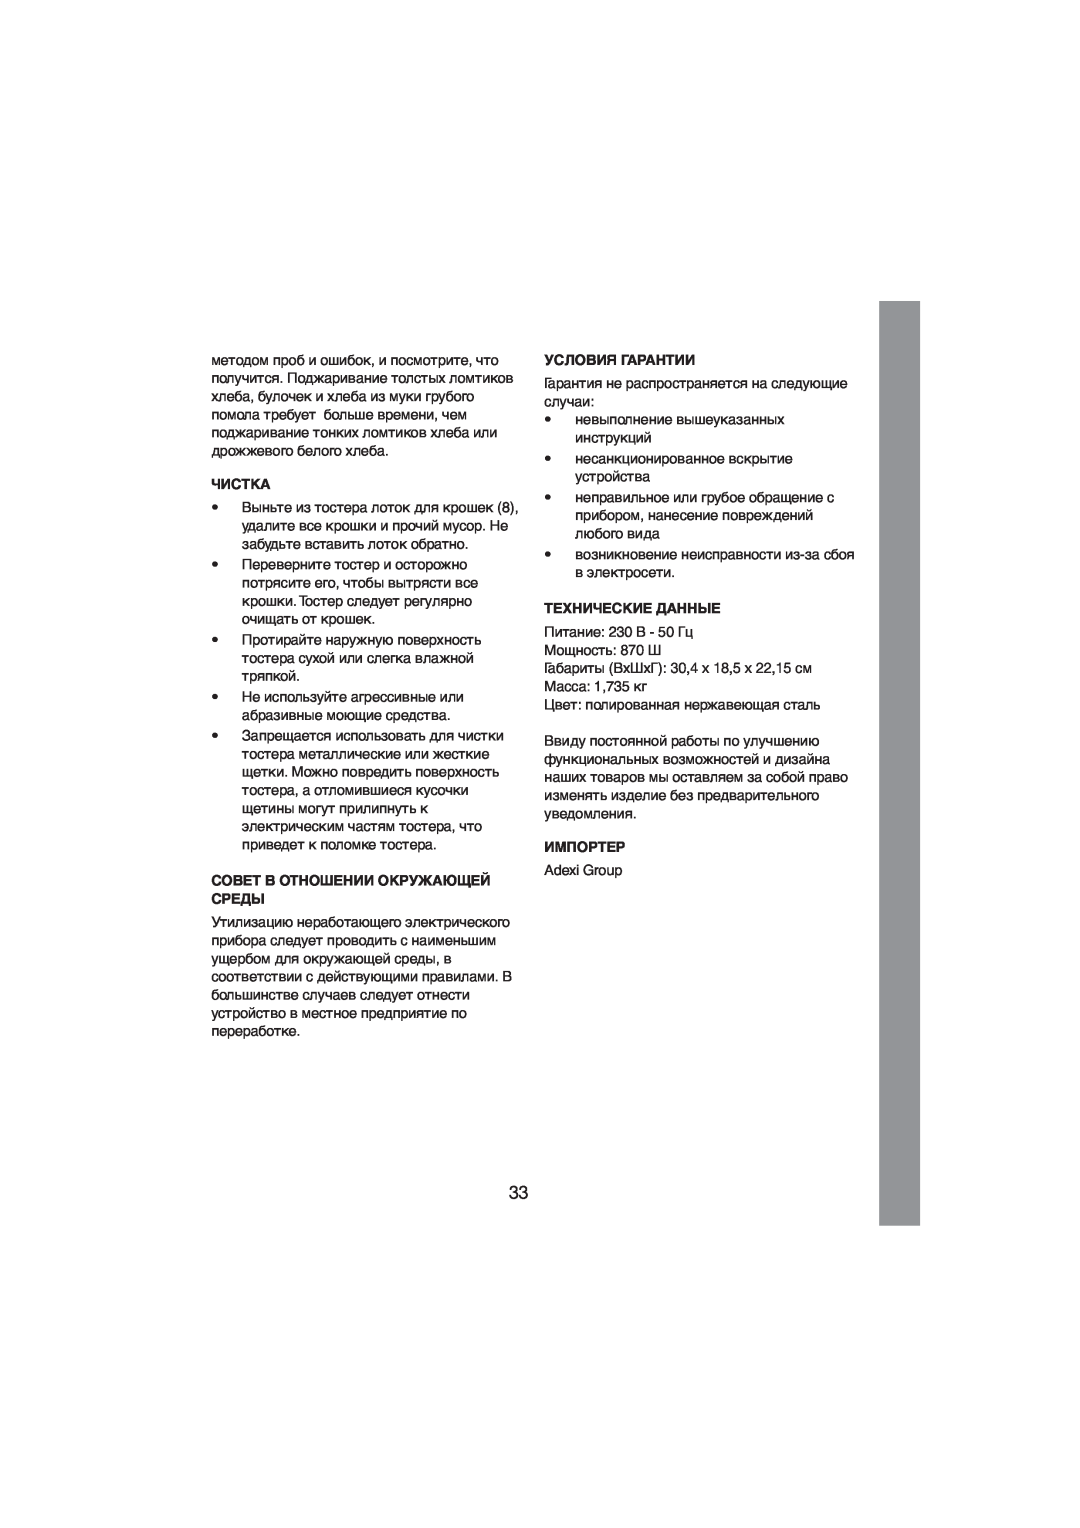 Melissa 243-015 manual Чистка, Совет В Отношении Окружающей Среды, Условия Гарантии, Технические Данные, Импортер 